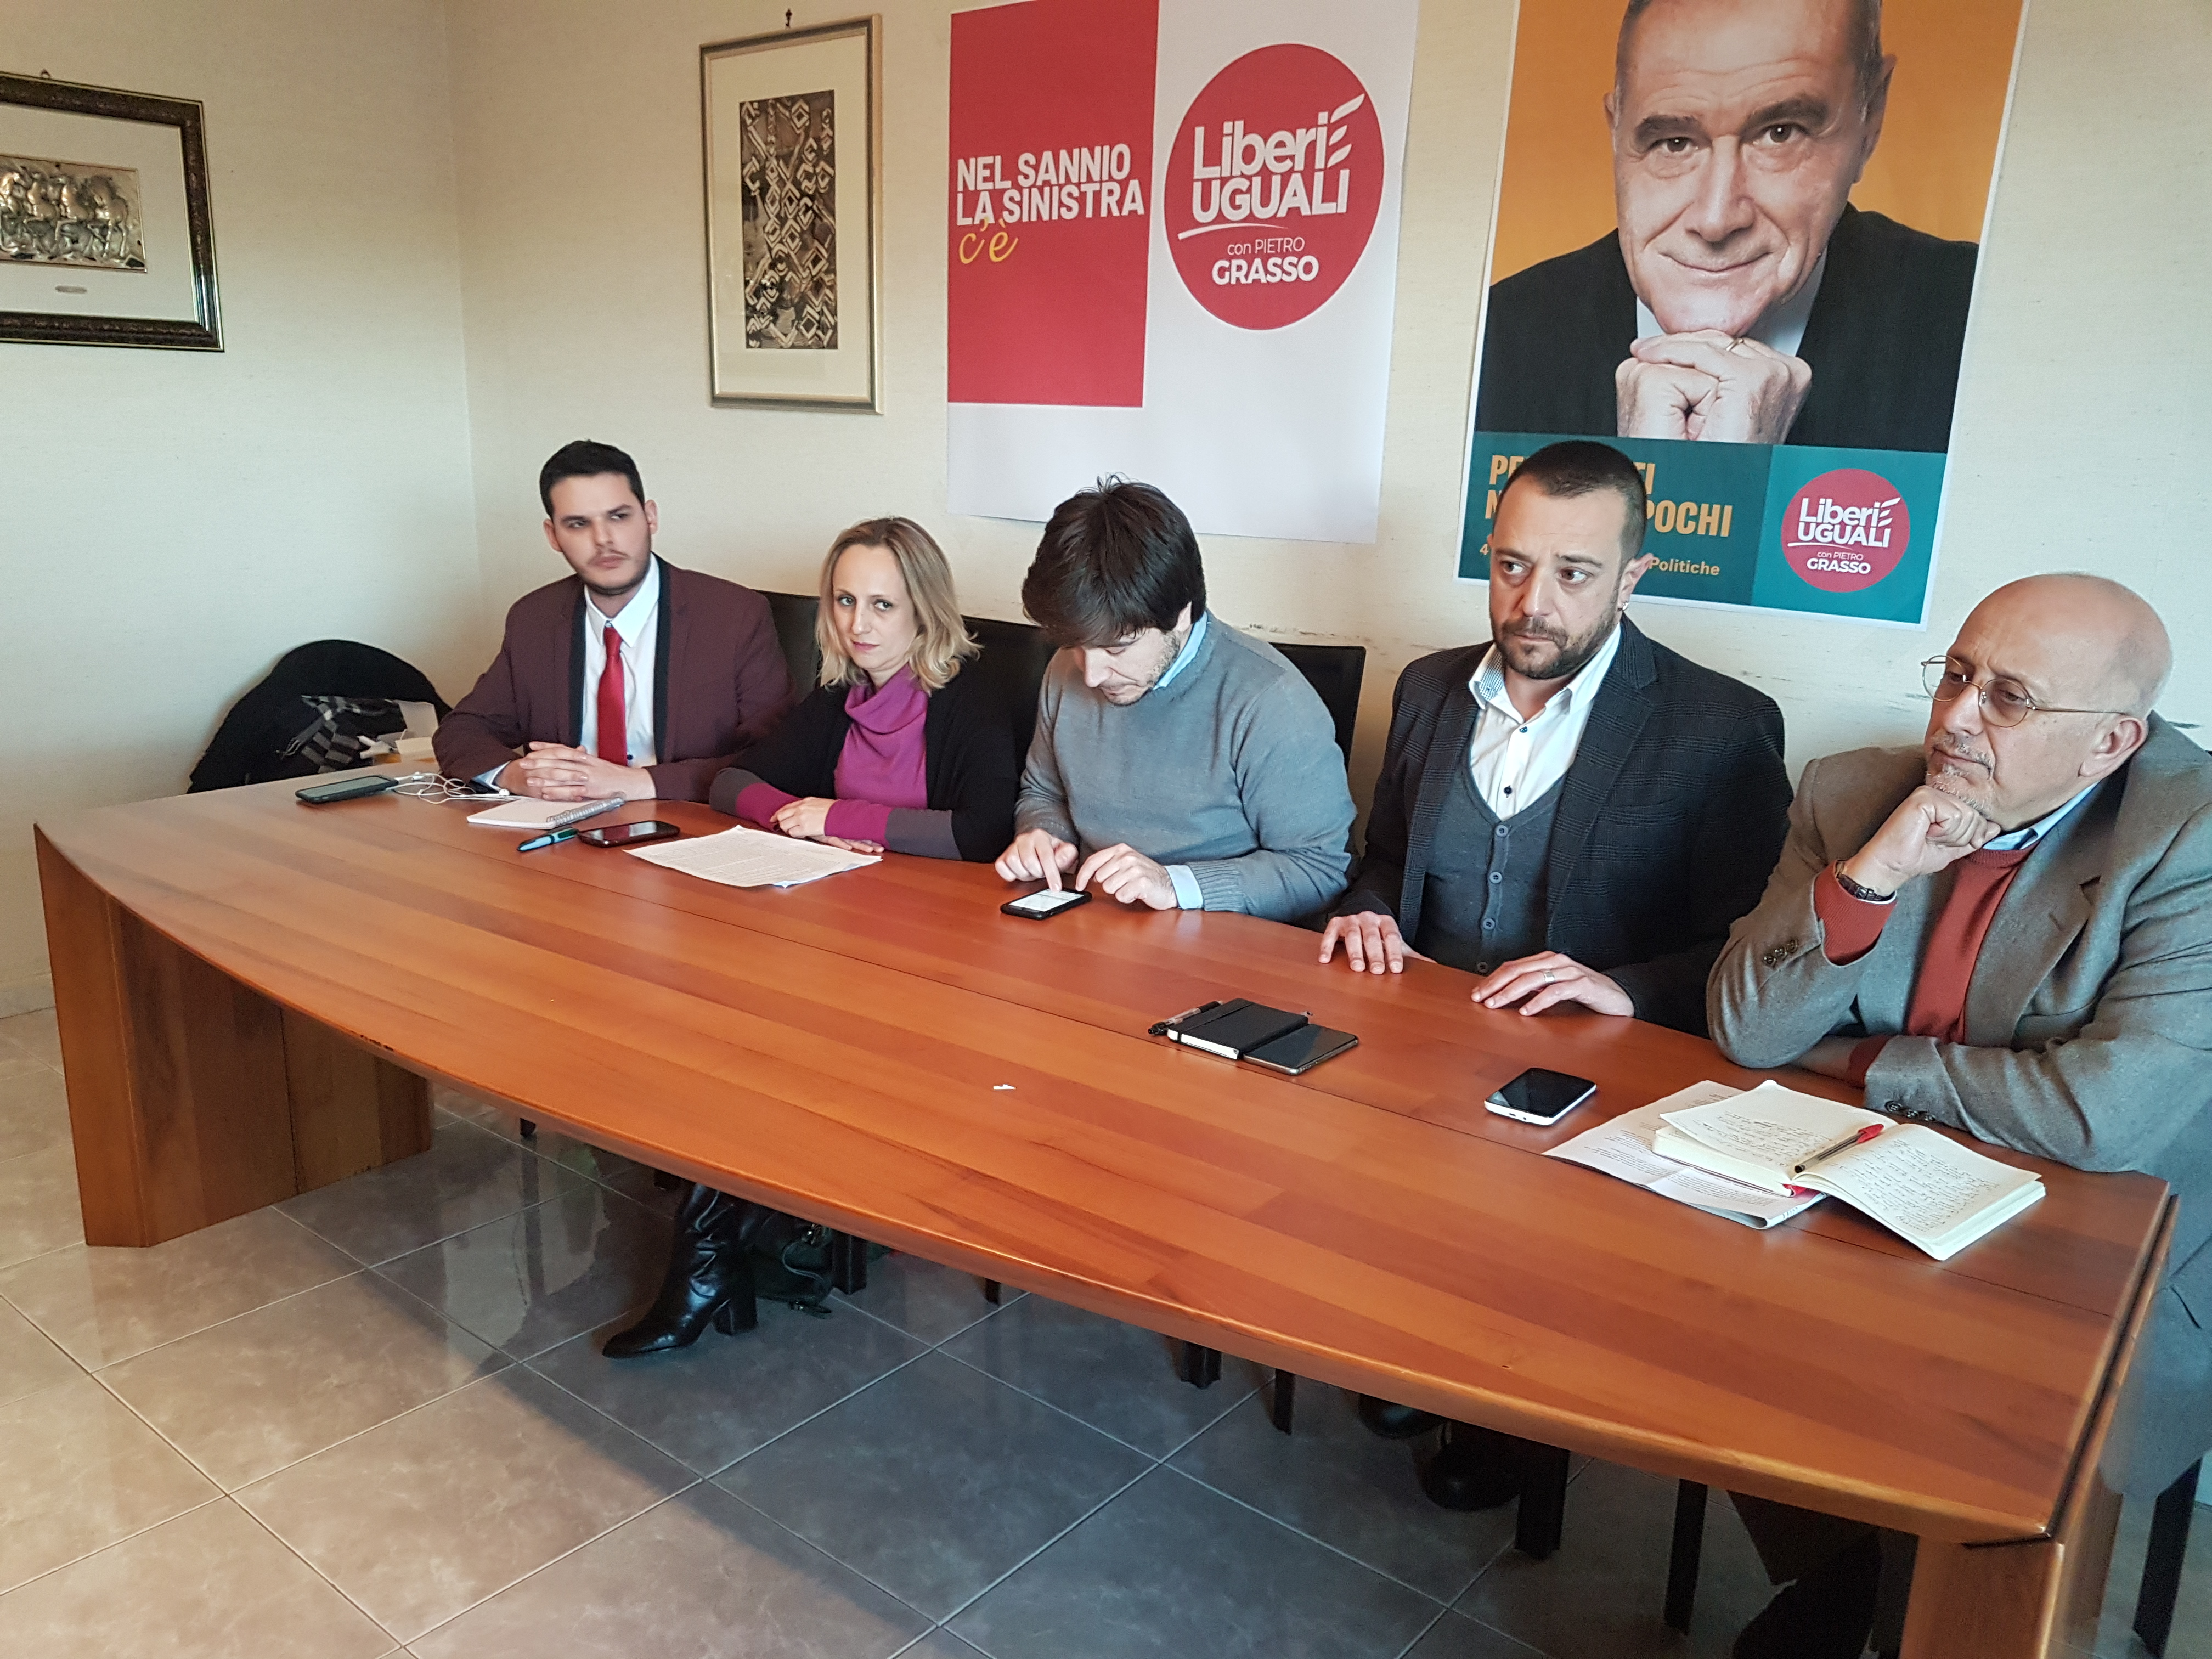 Benevento| Liberi e Uguali, i candidati e la sinistra che verrà